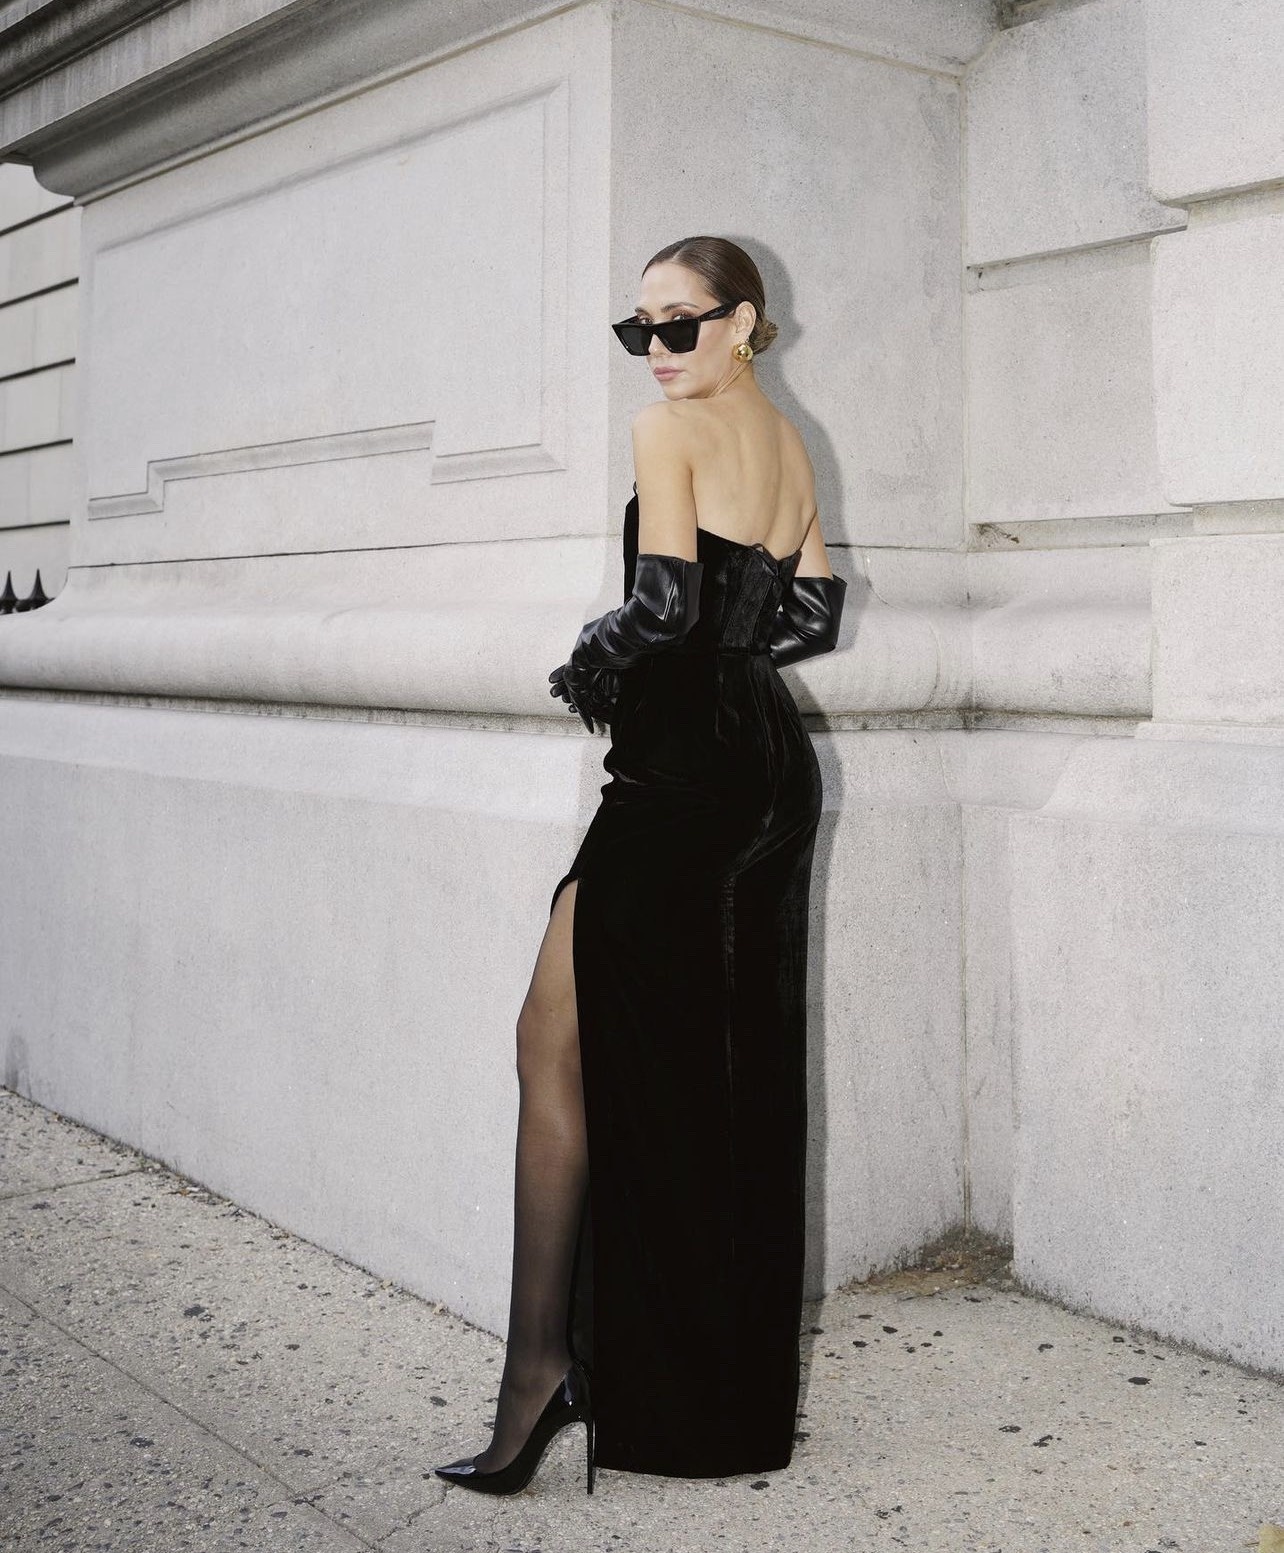 Tỏa sáng dịp cuối năm với những mẫu váy little black dress kinh điển - ảnh 9